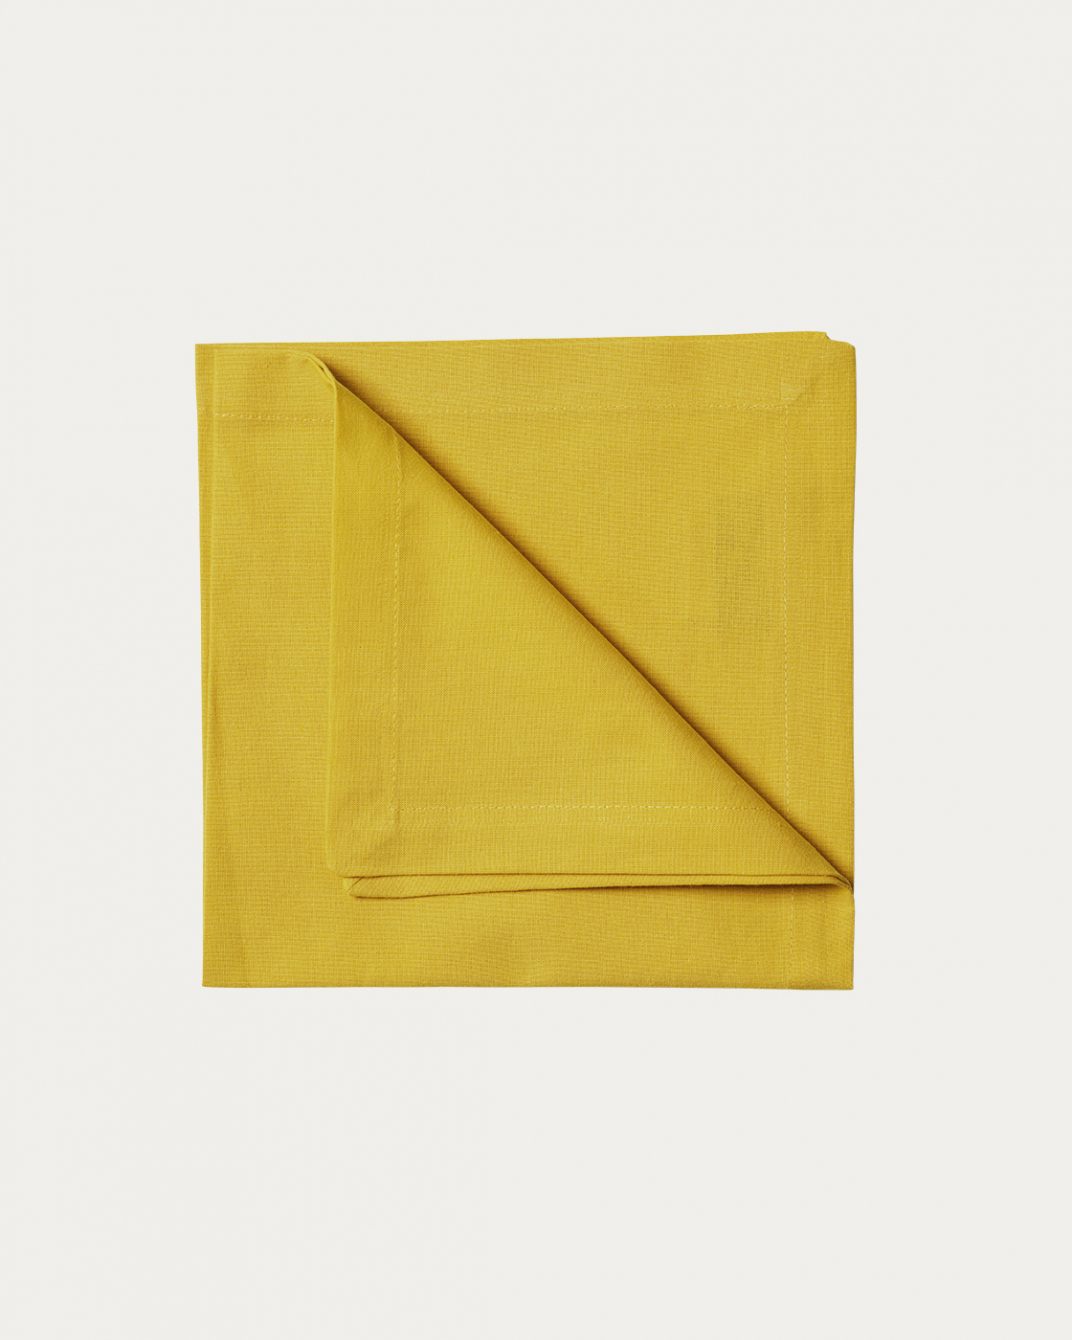 Produktbild senfgelb ROBERT Serviette aus weicher Baumwolle von LINUM DESIGN. Größe 45x45 cm und in 4er-Pack verkauft.